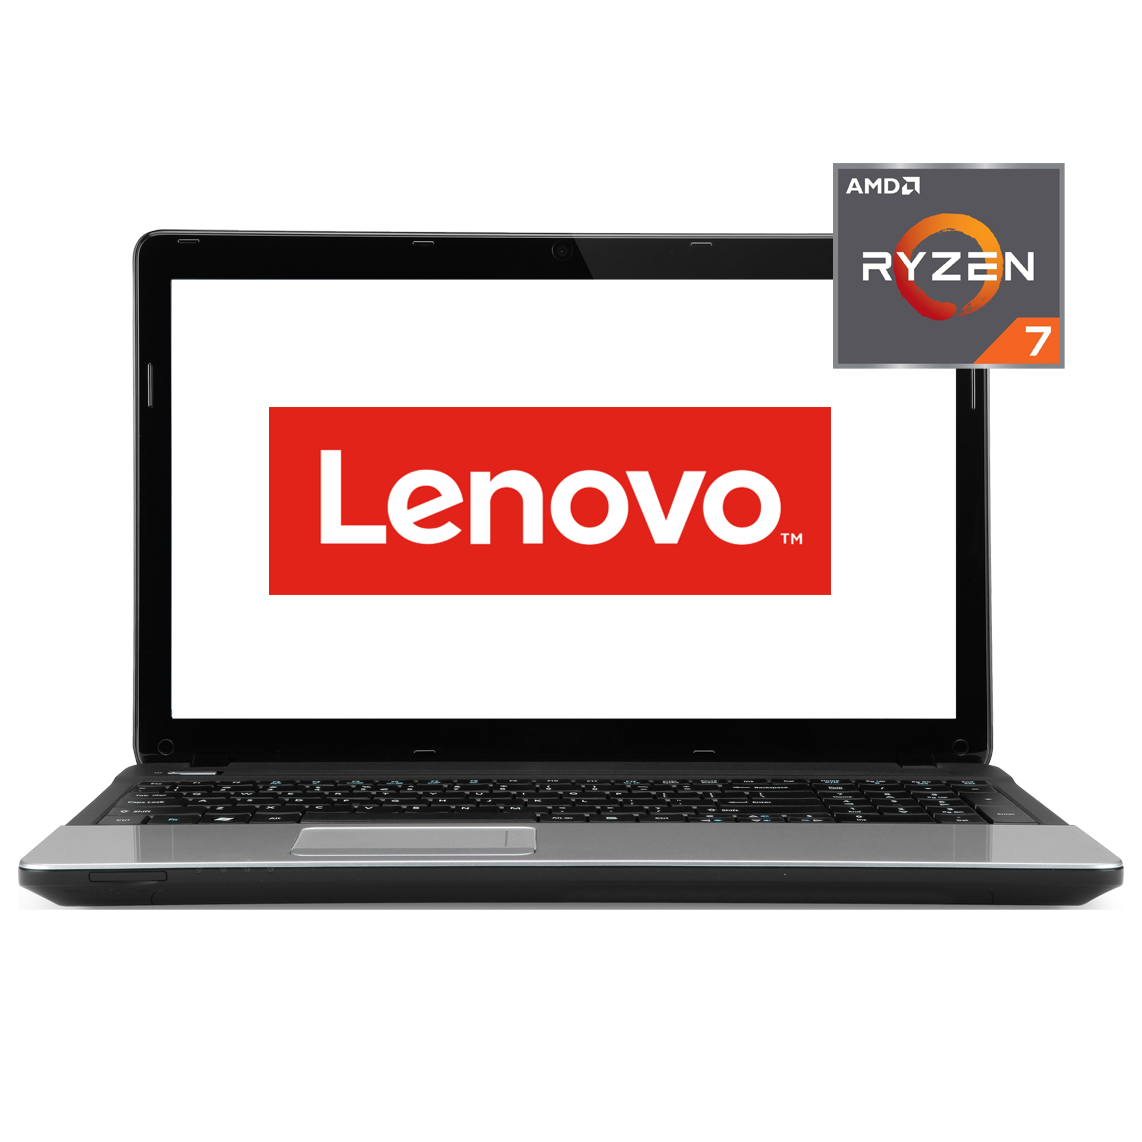 Lenovo - 13 inch AMD Ryzen 7